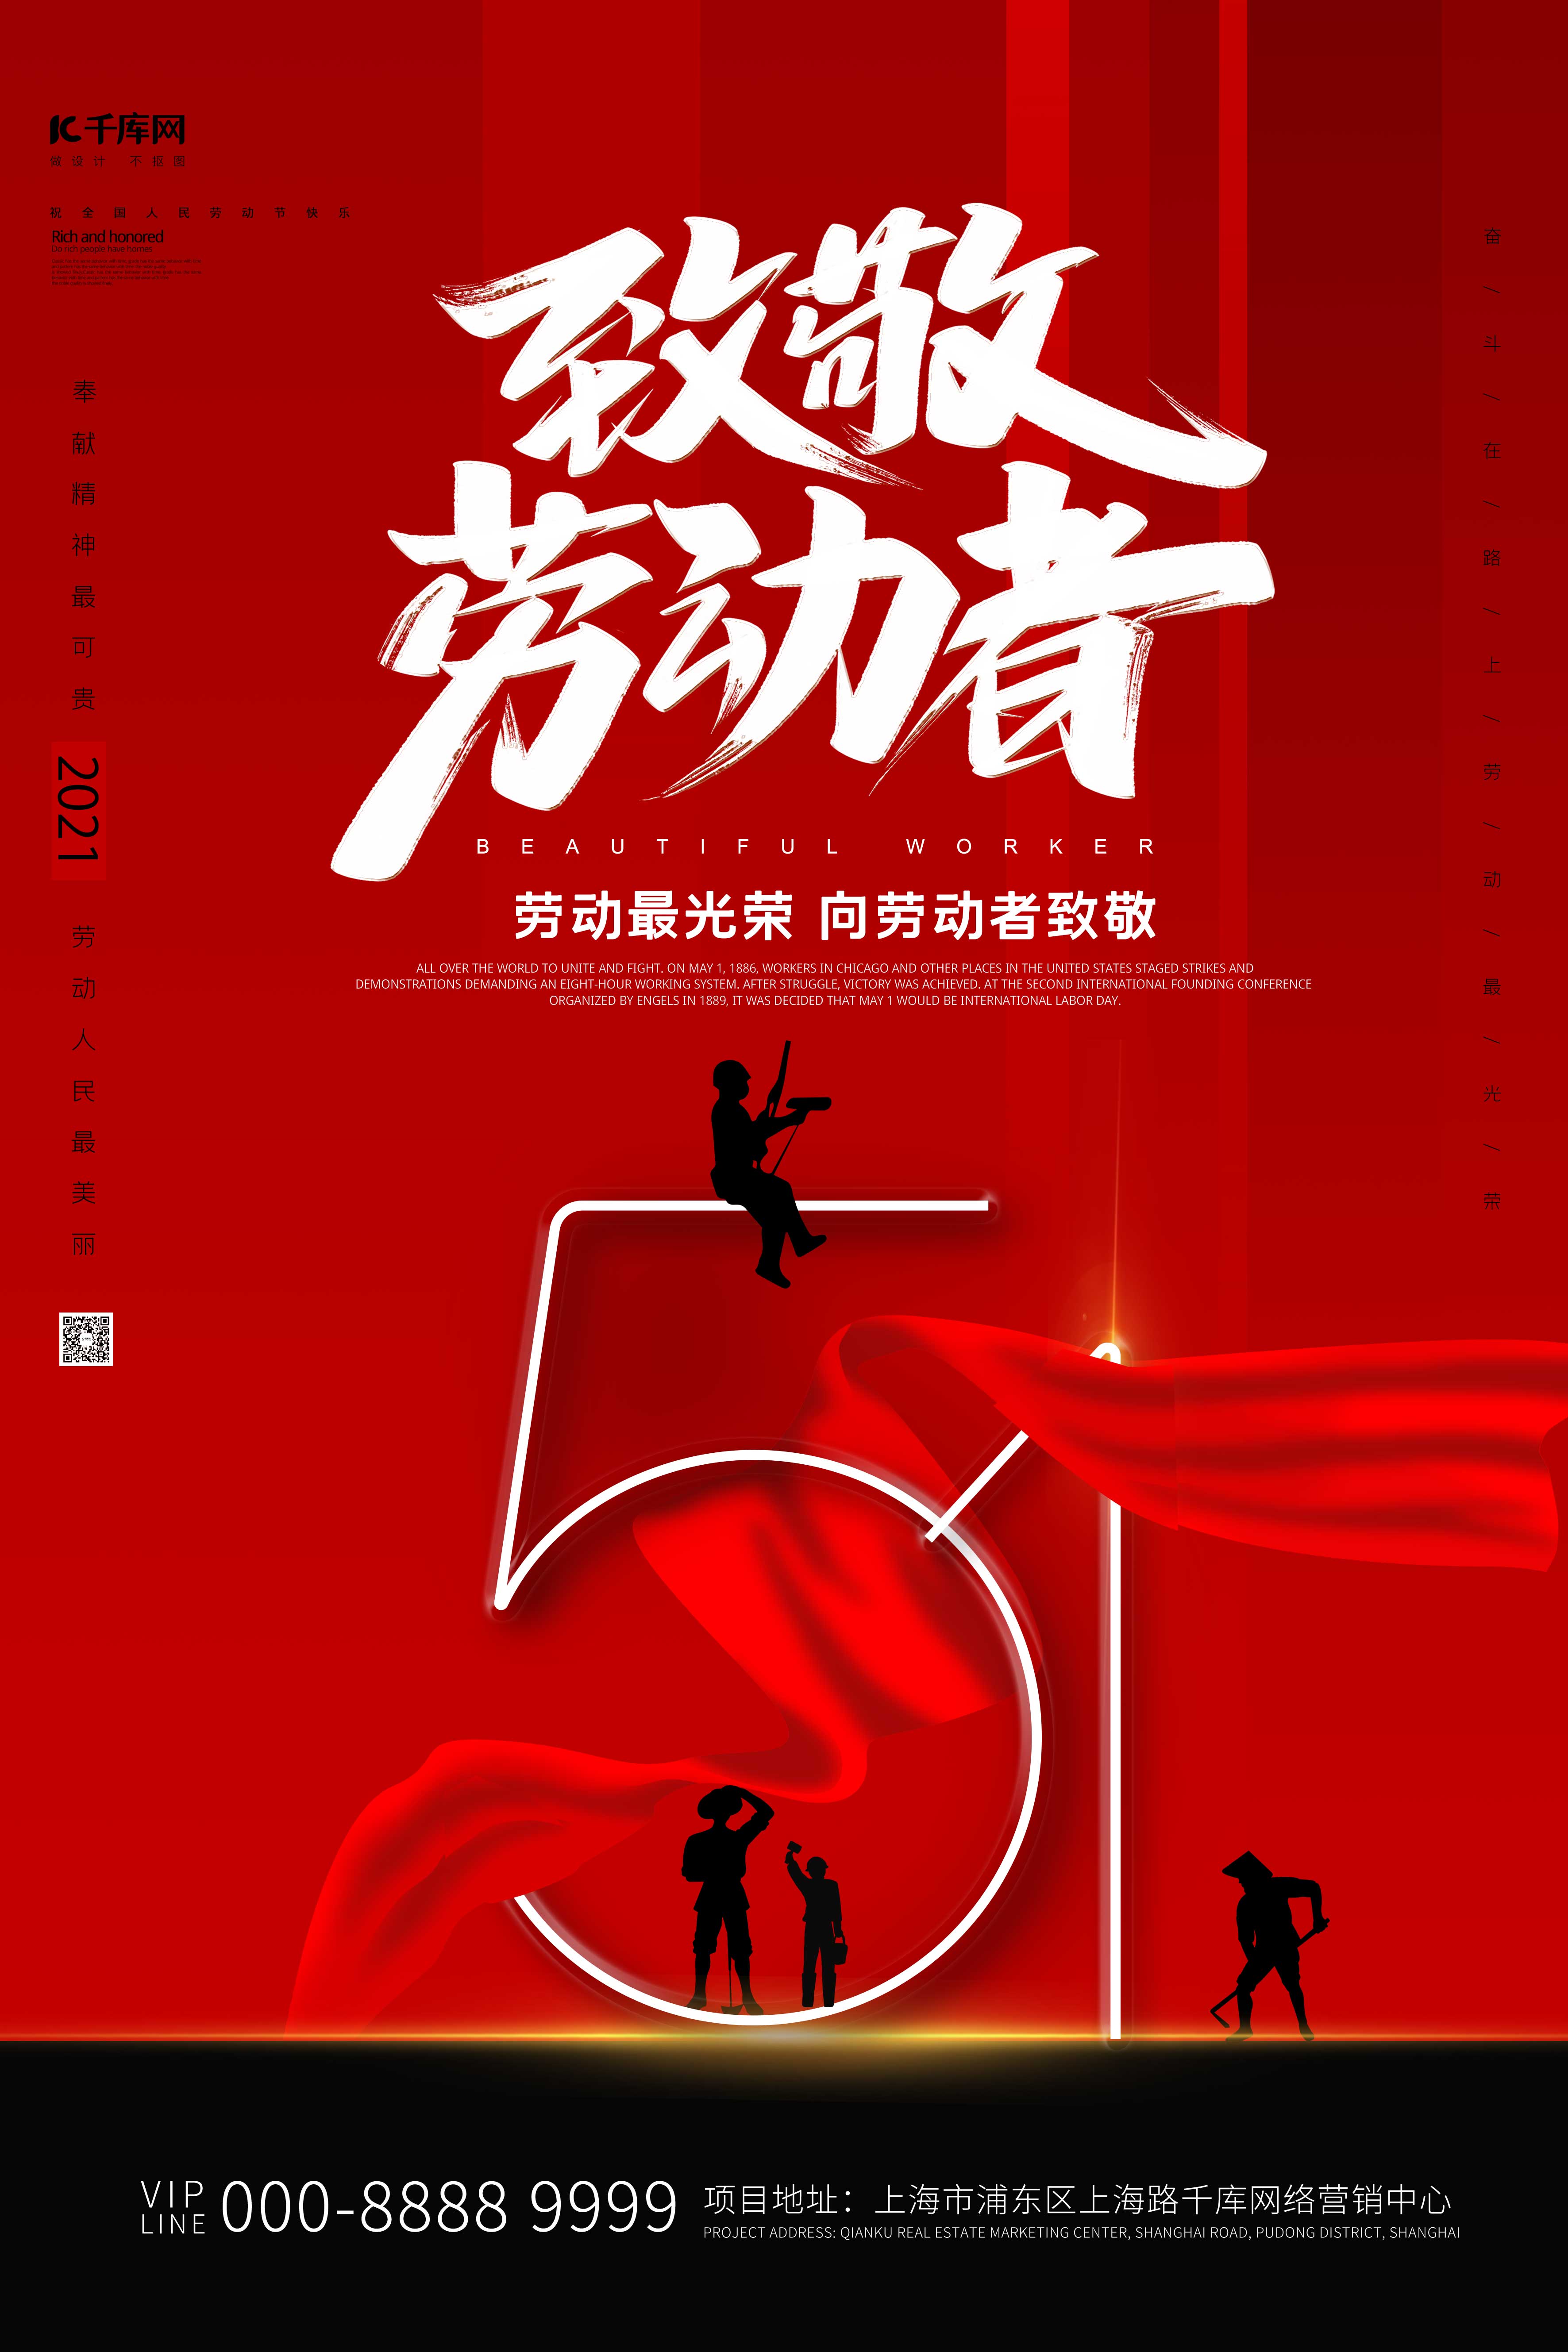 五一劳动节劳动光荣宣传促销海报图片下载 - 觅知网